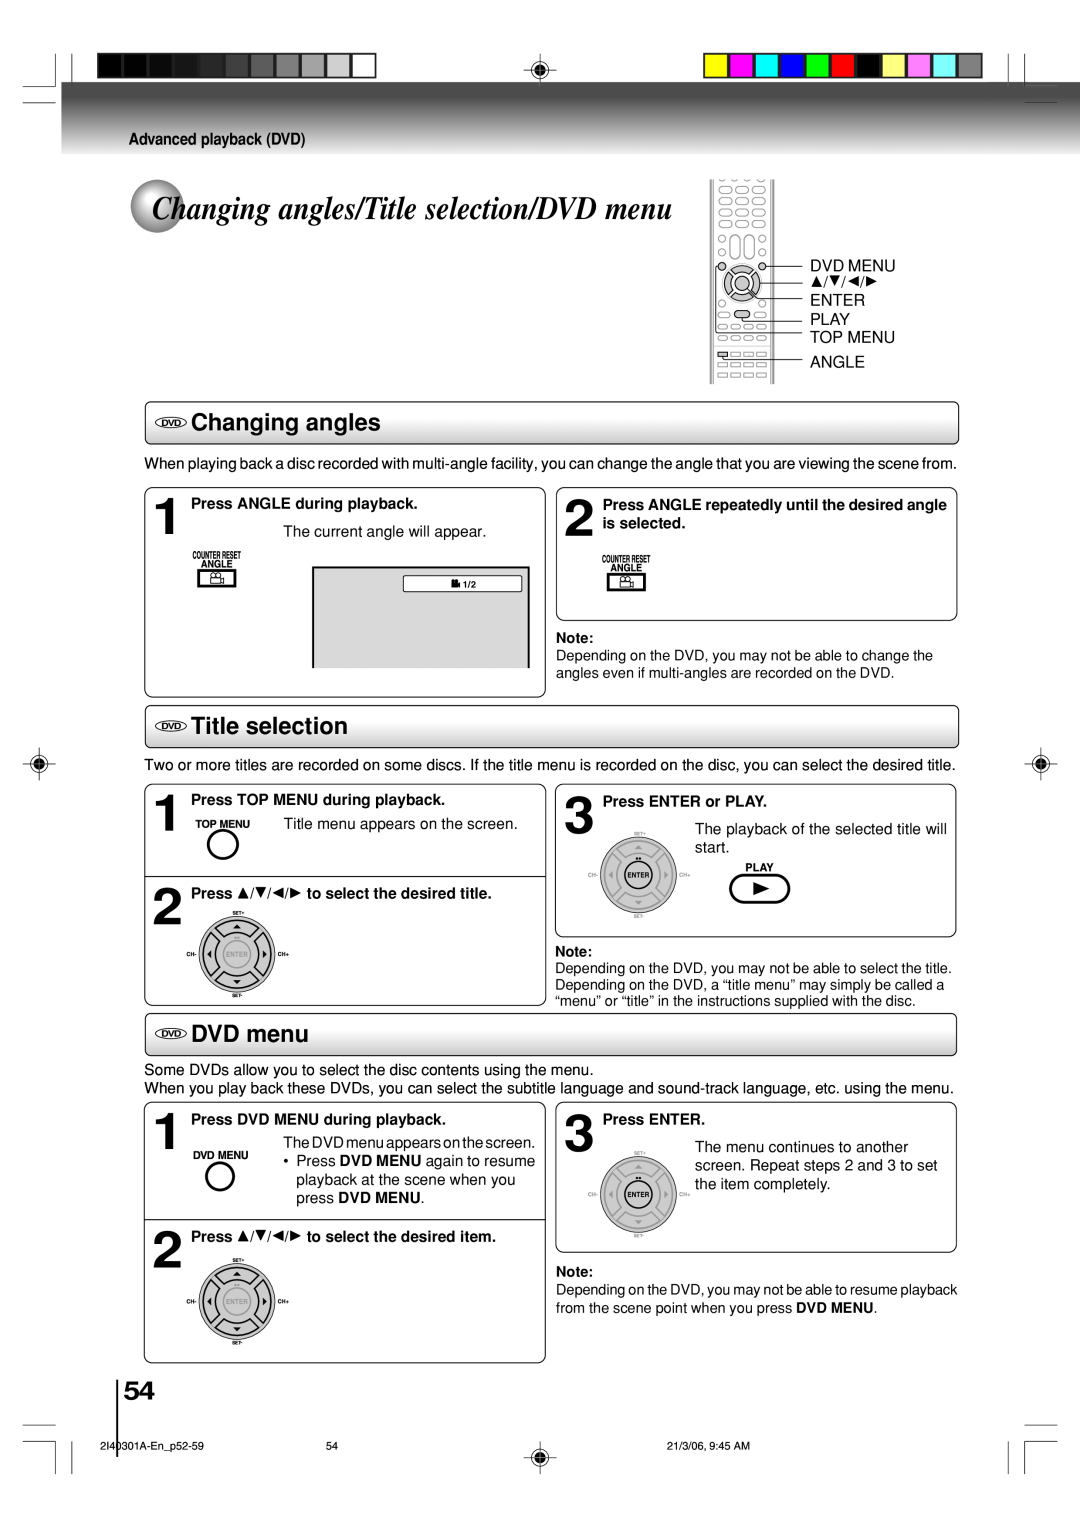 Toshiba SD-V594SC Changing angles/Title selection/DVD menu, DVD Changing angles, DVD Title selection, DVD DVD menu 